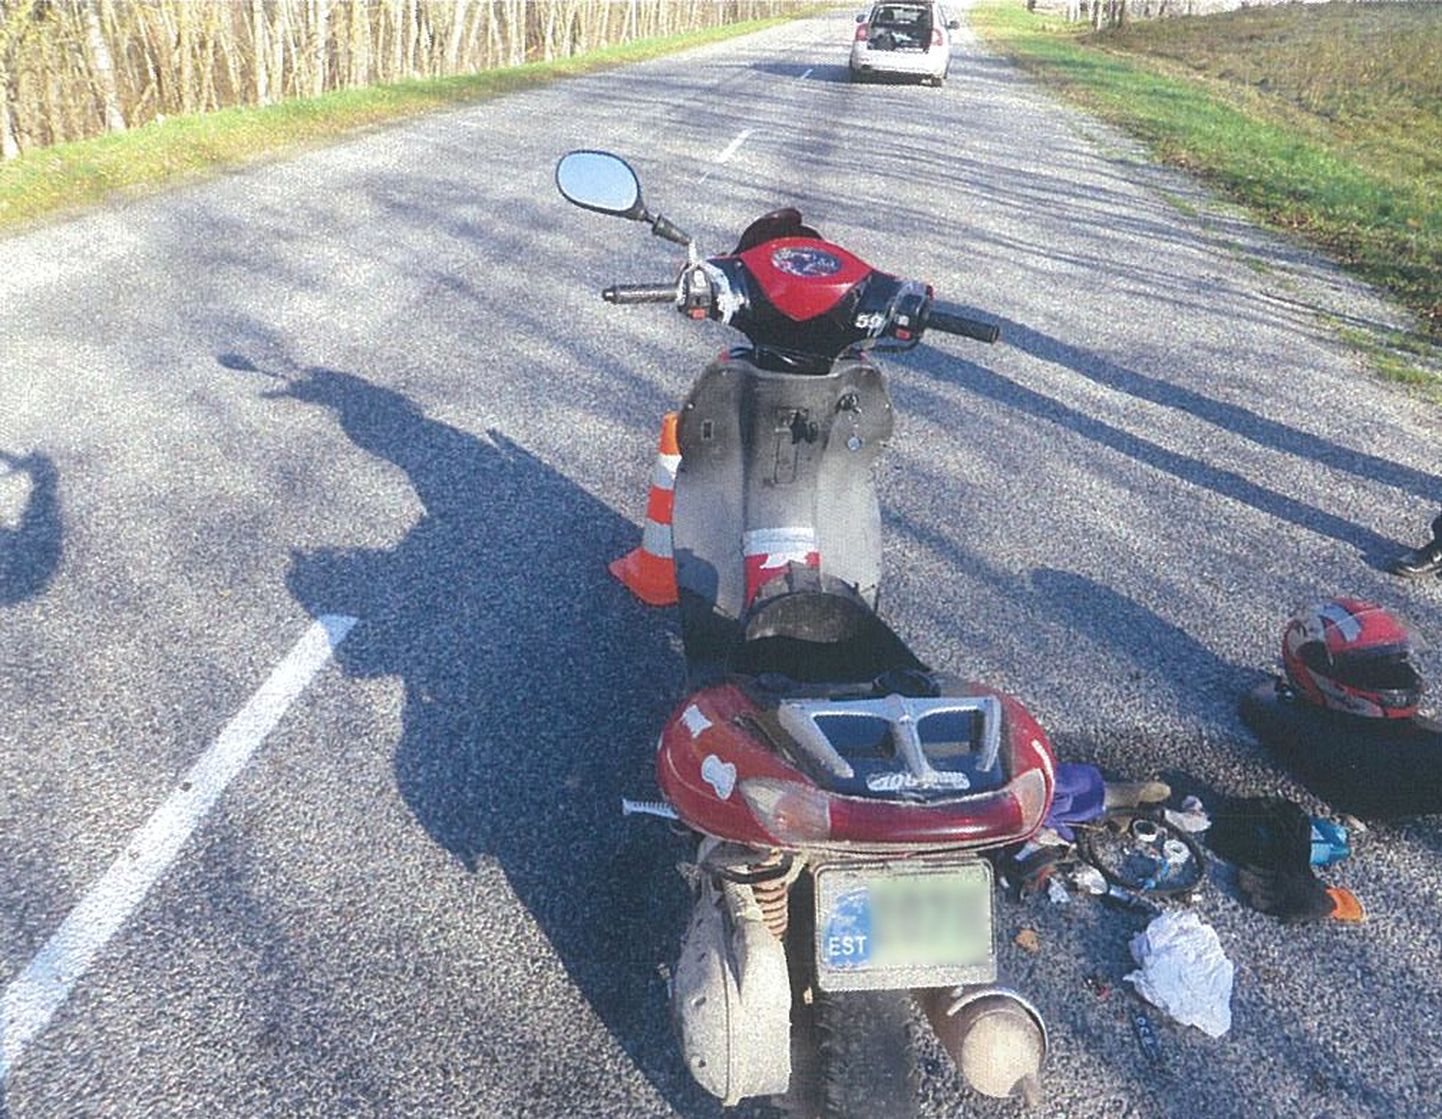 Liiklusõnnetus Valgamaal Palupera vallas Tatra-Otepää-Sangaste tee 16. kilomeetril.